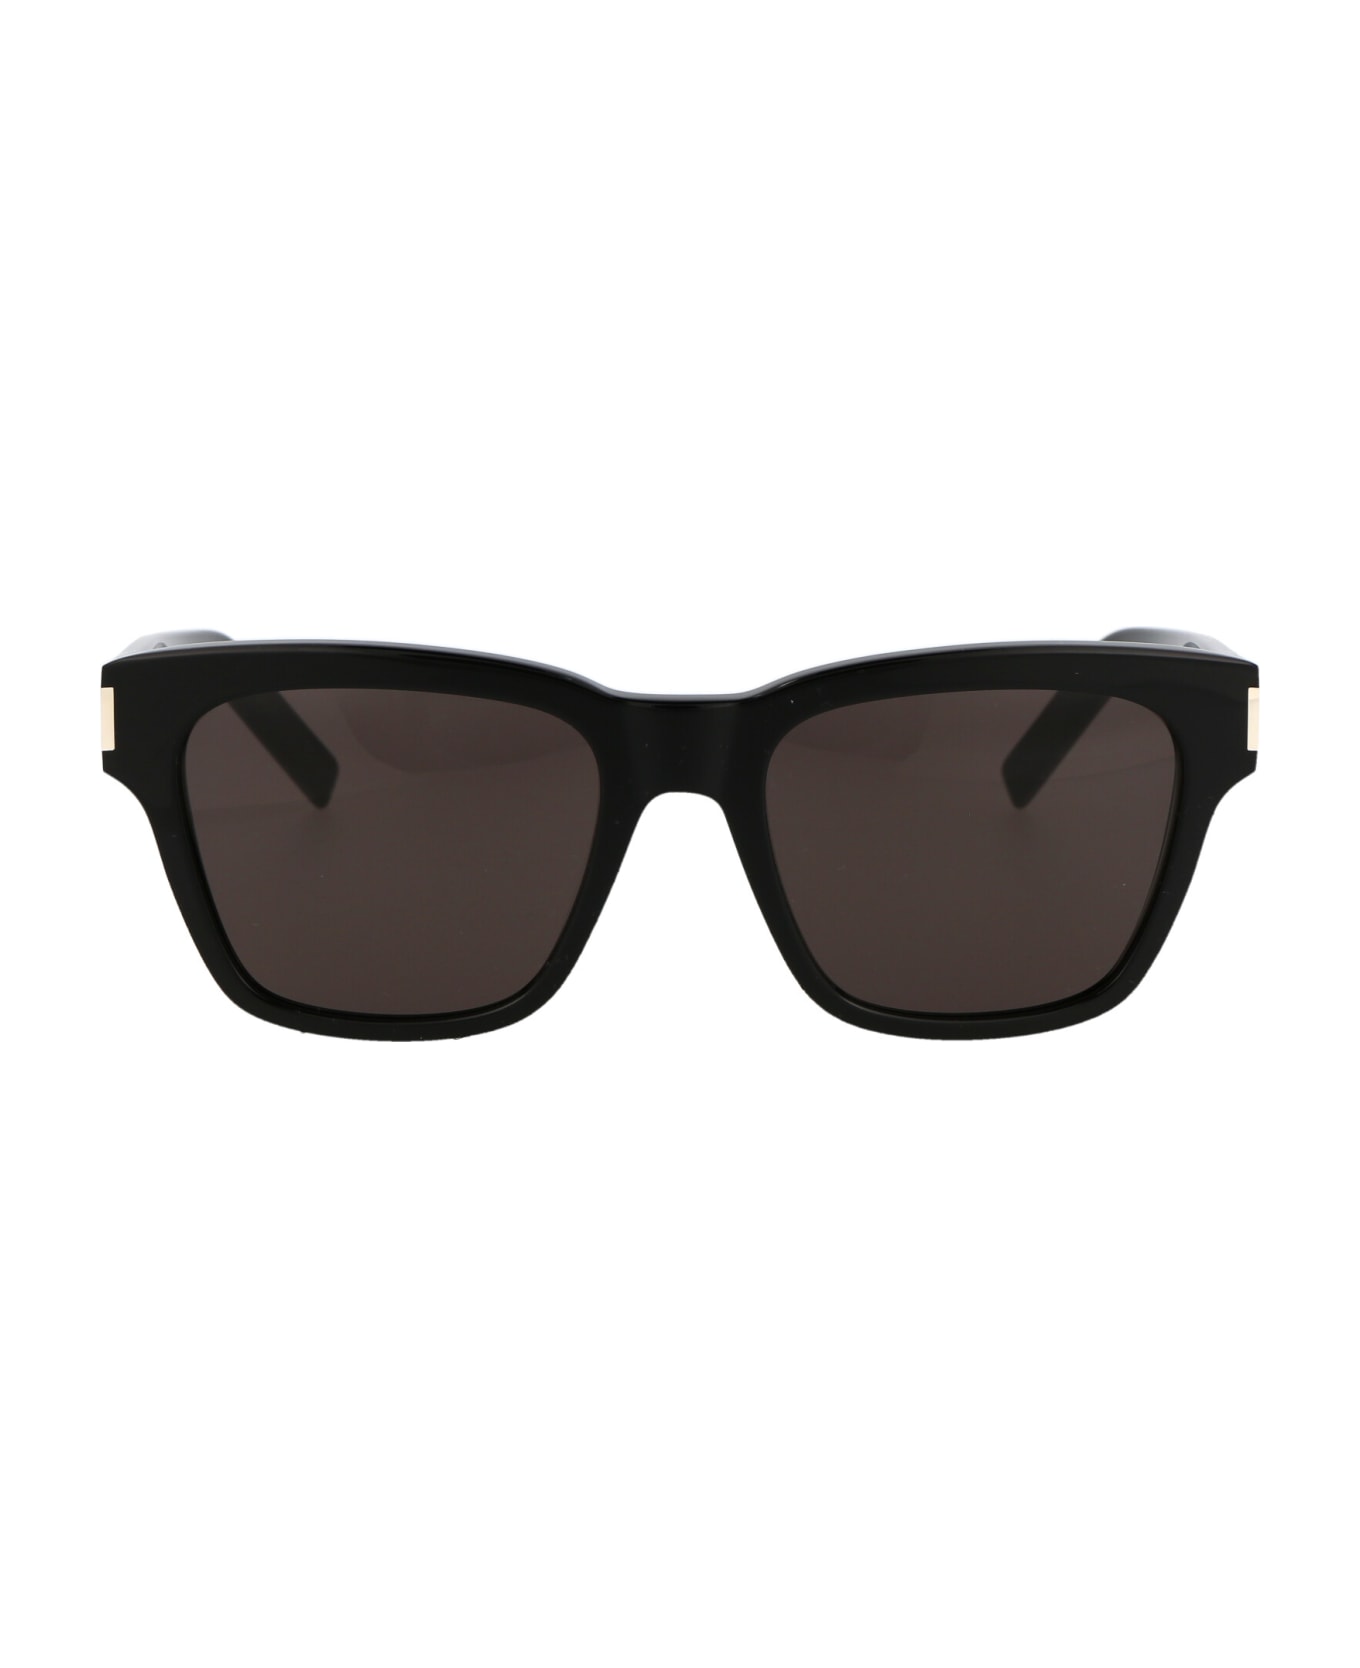 Saint Laurent Eyewear Sl 560 Sunglasses - 001 BLACK BLACK BLACK